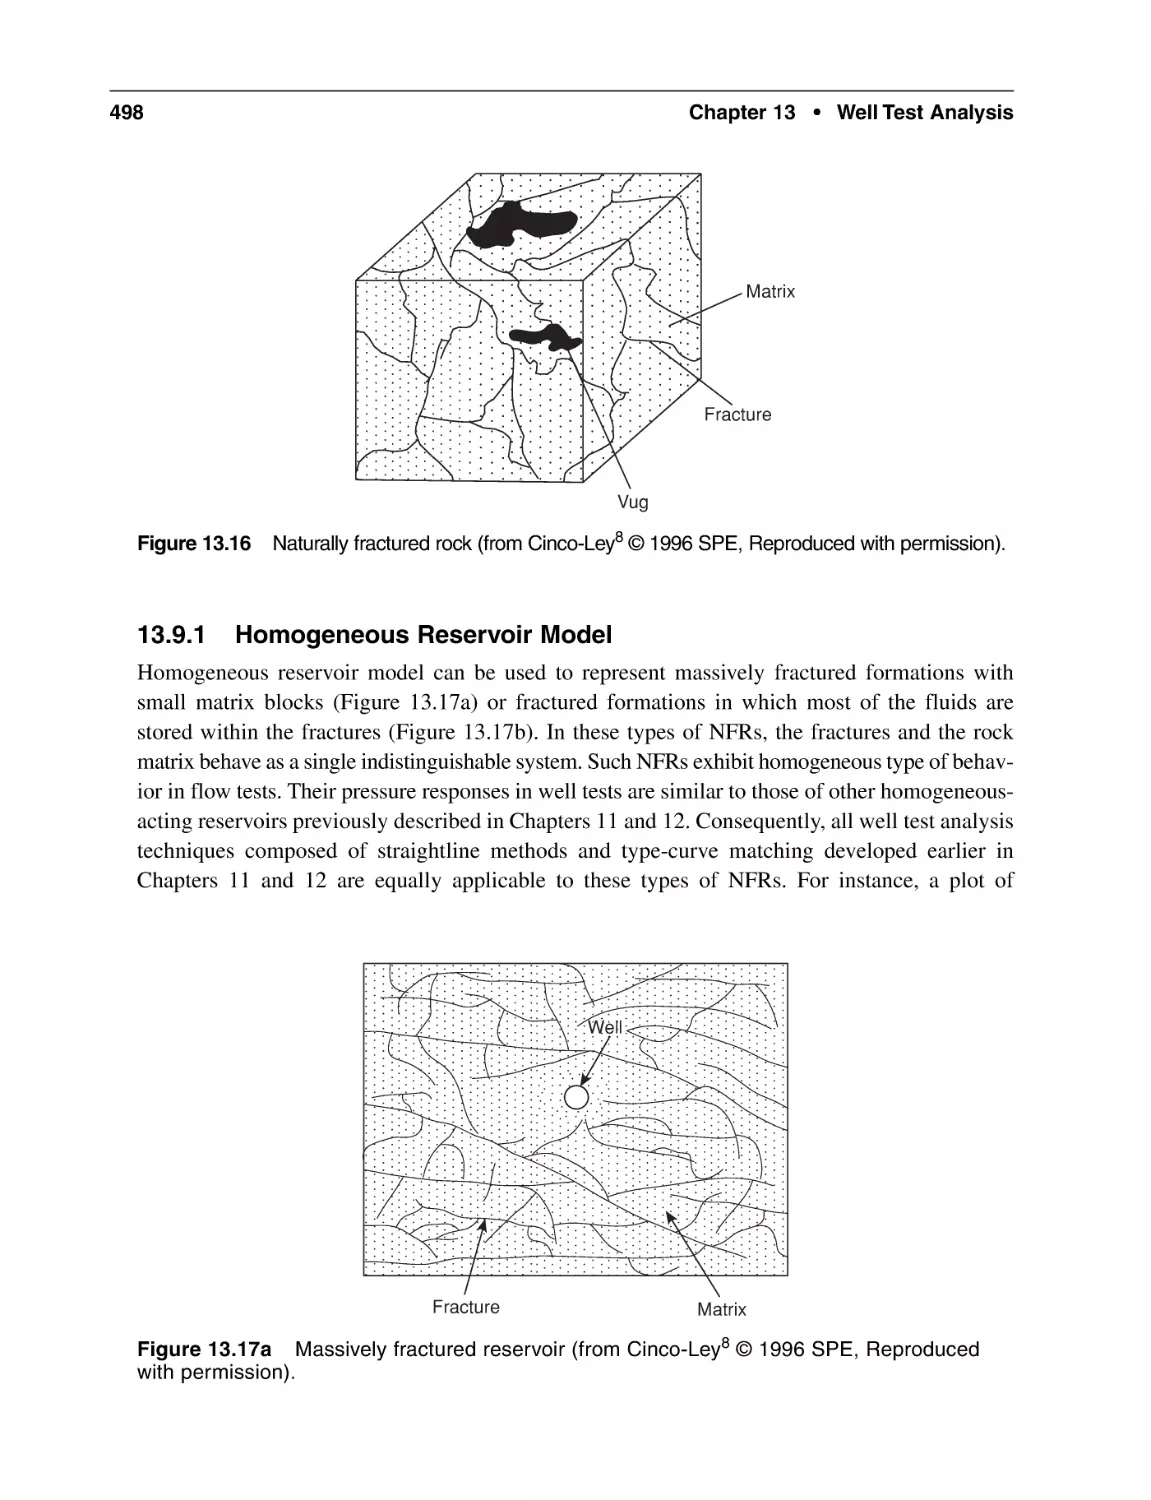 13.9.1 Homogeneous Reservoir Model